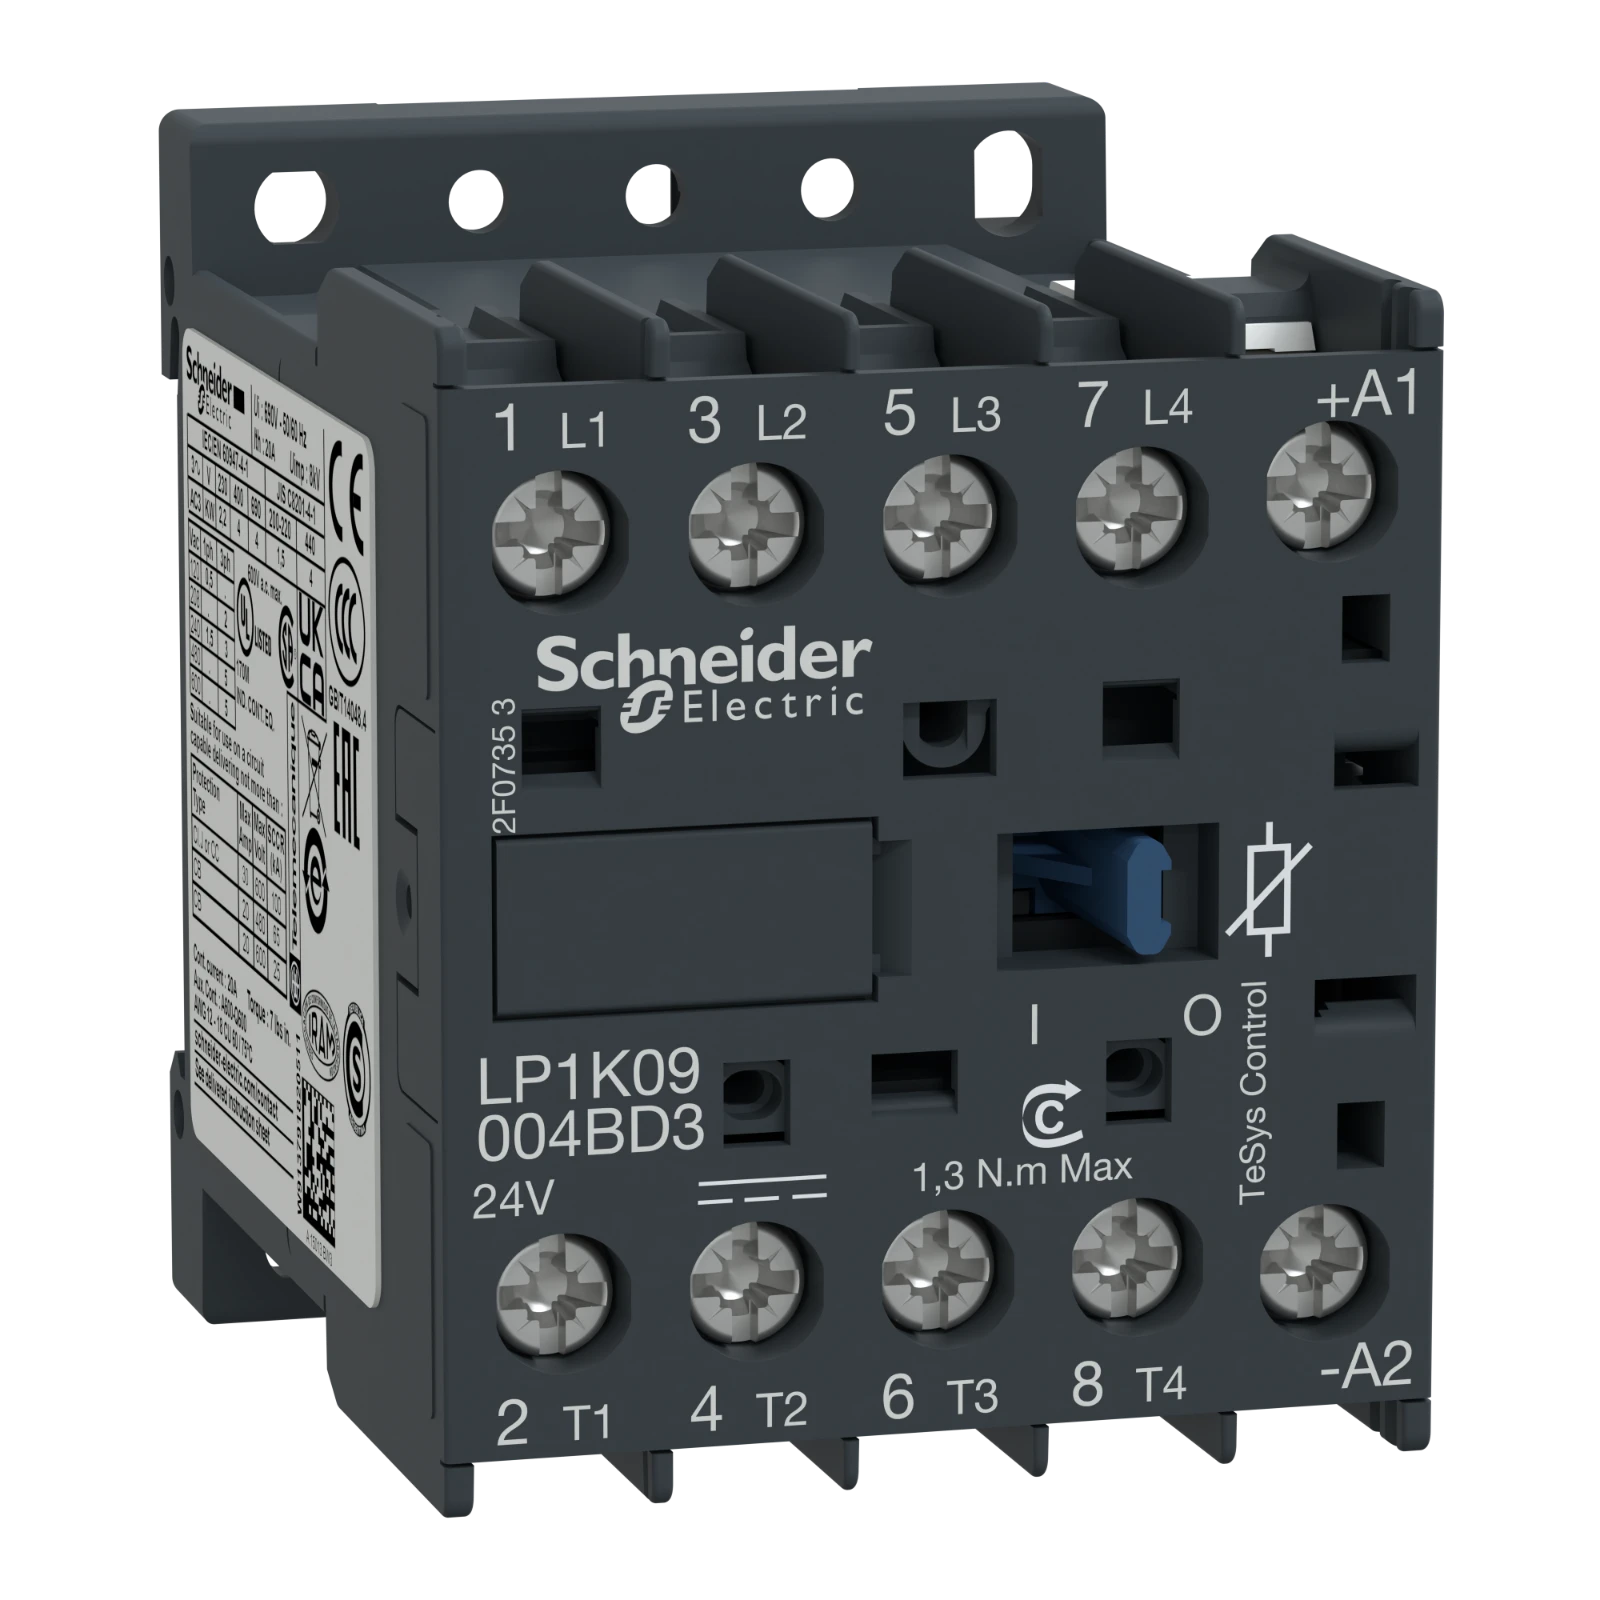 1042834 - Schneider Electric LP1K09004BD3